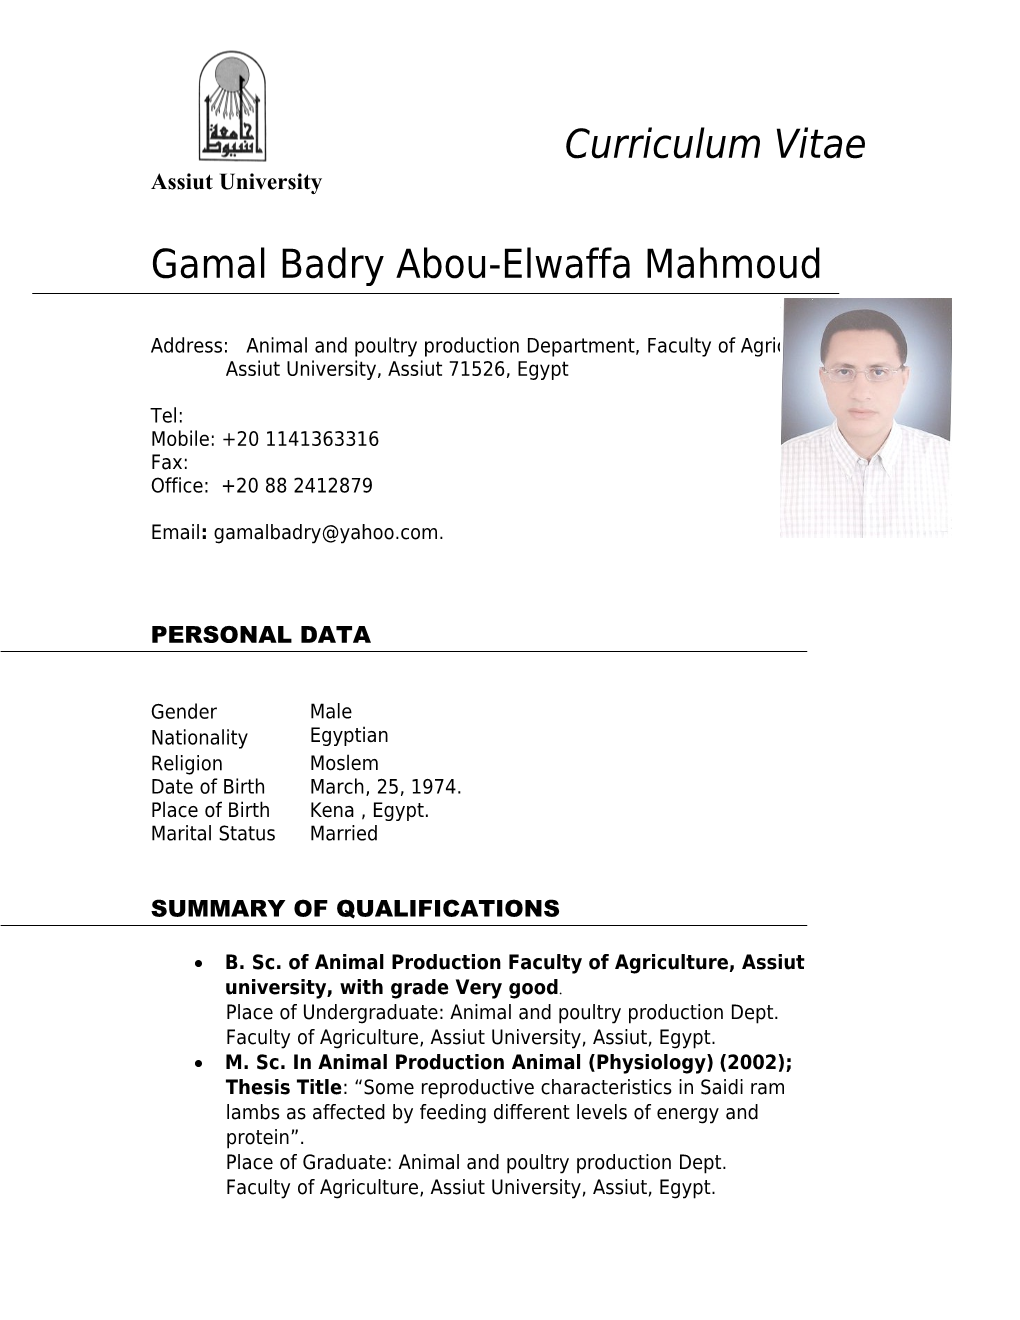 Gamal Badry Abou-Elwaffa Mahmoud